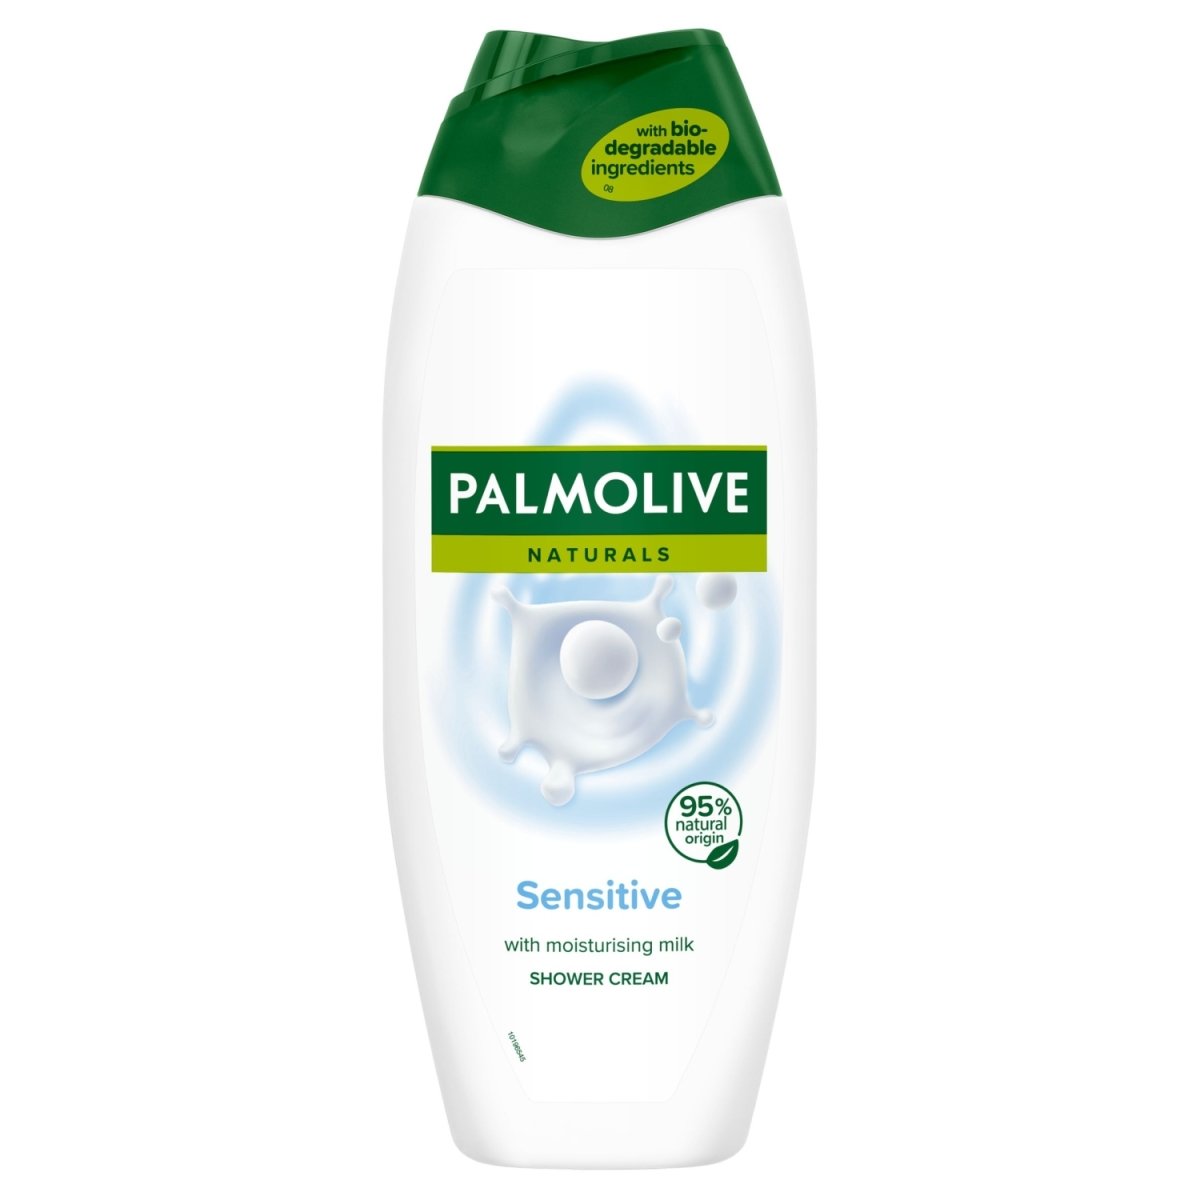 Palmolive Shower Milk - Intamarque 8718951248656